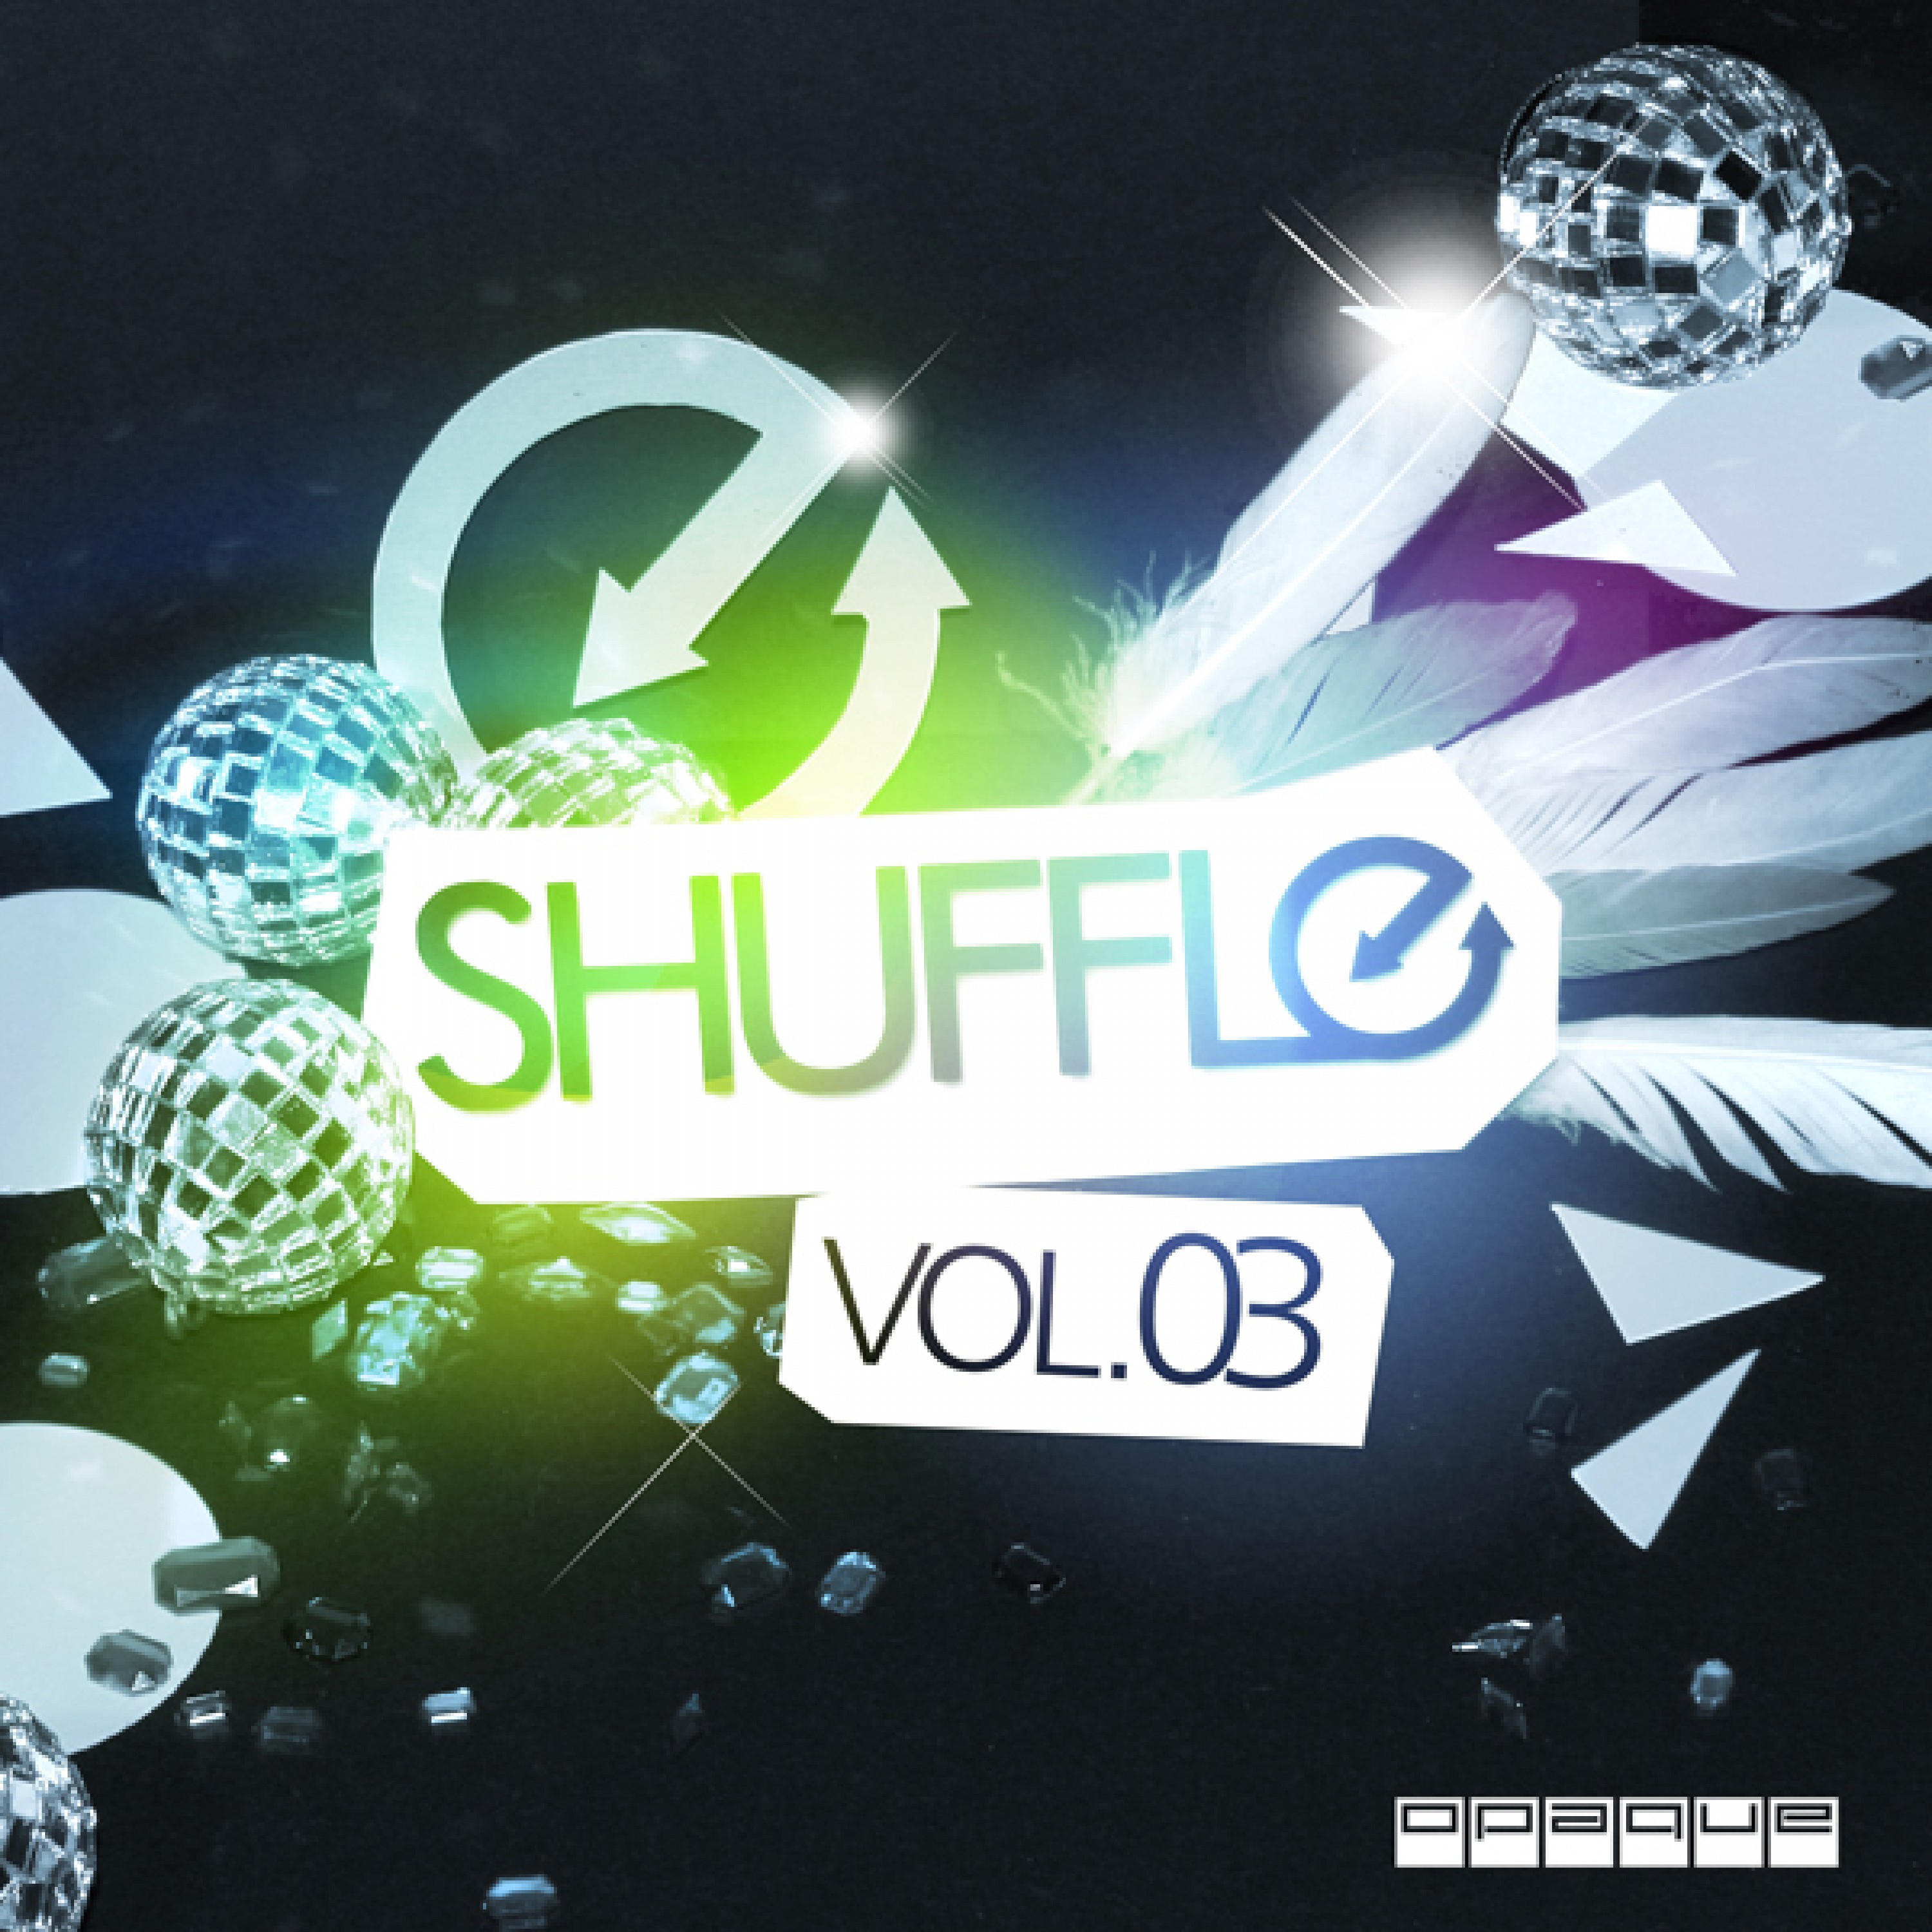 Shuffle Vol. 03